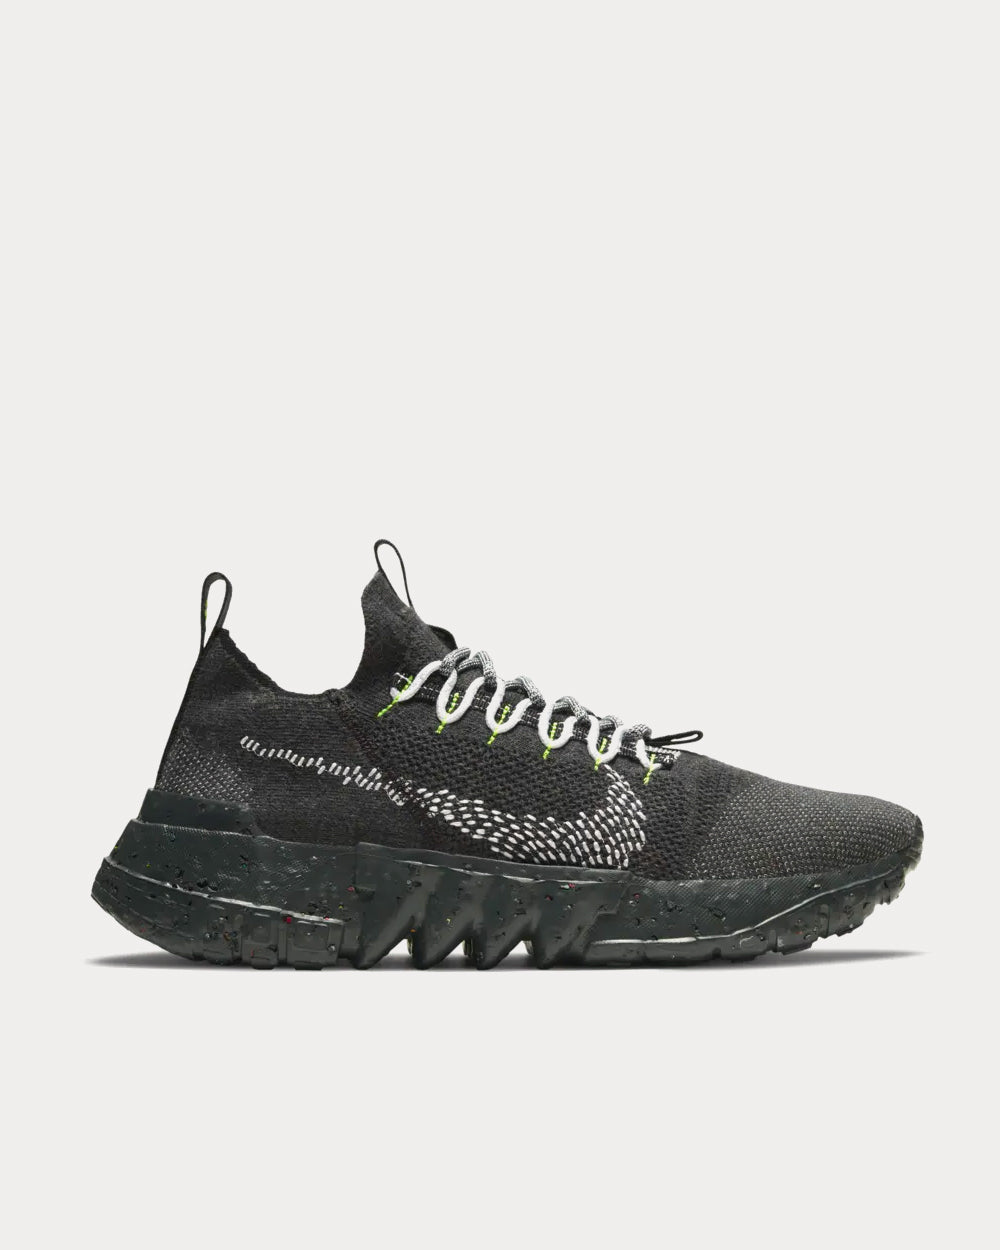 Nike Space Hippie 01 Black Volt Low Top Sneakers - Sneak in Peace